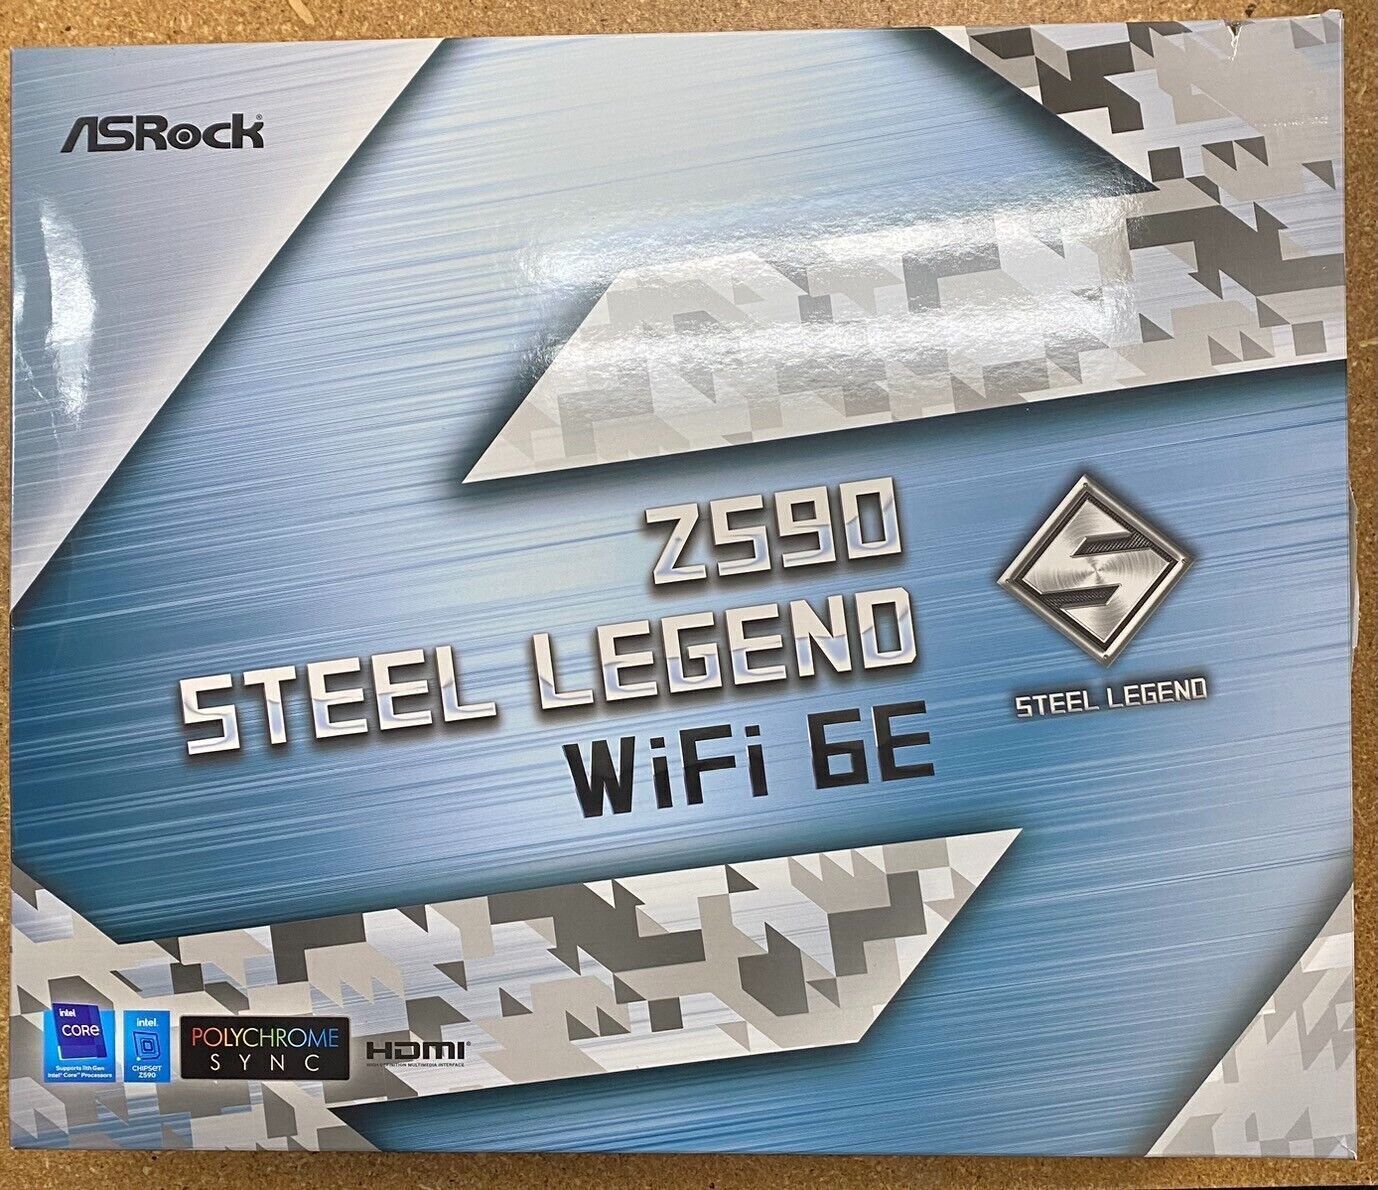 ASRock Z590 Steel Legend Wi-Fi 6E Intel Chipset Socket LGA1200 Motherboard